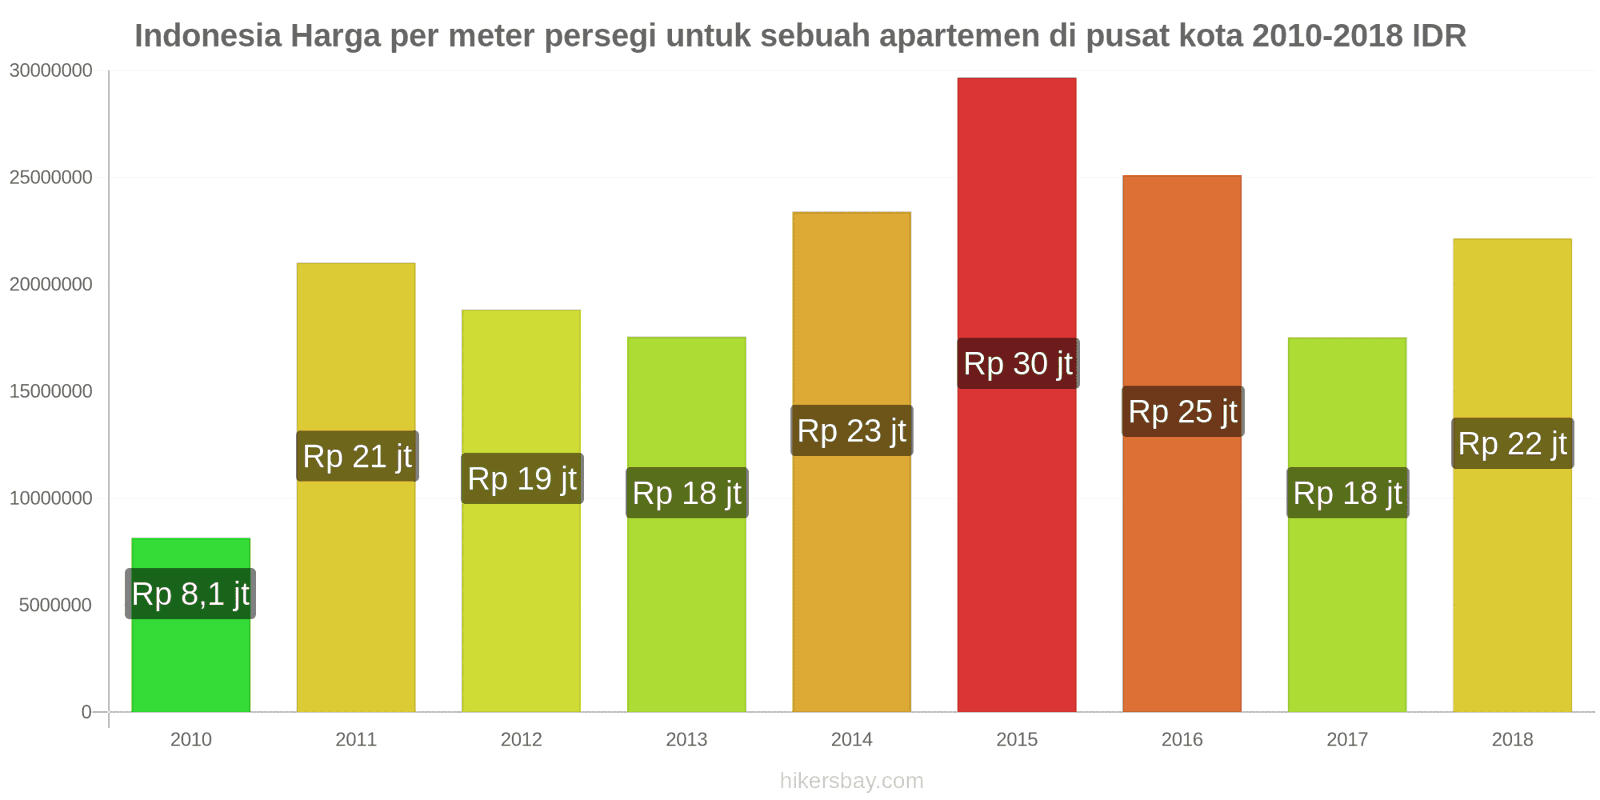 Indonesia perubahan harga Harga per meter persegi untuk apartemen di pusat kota hikersbay.com